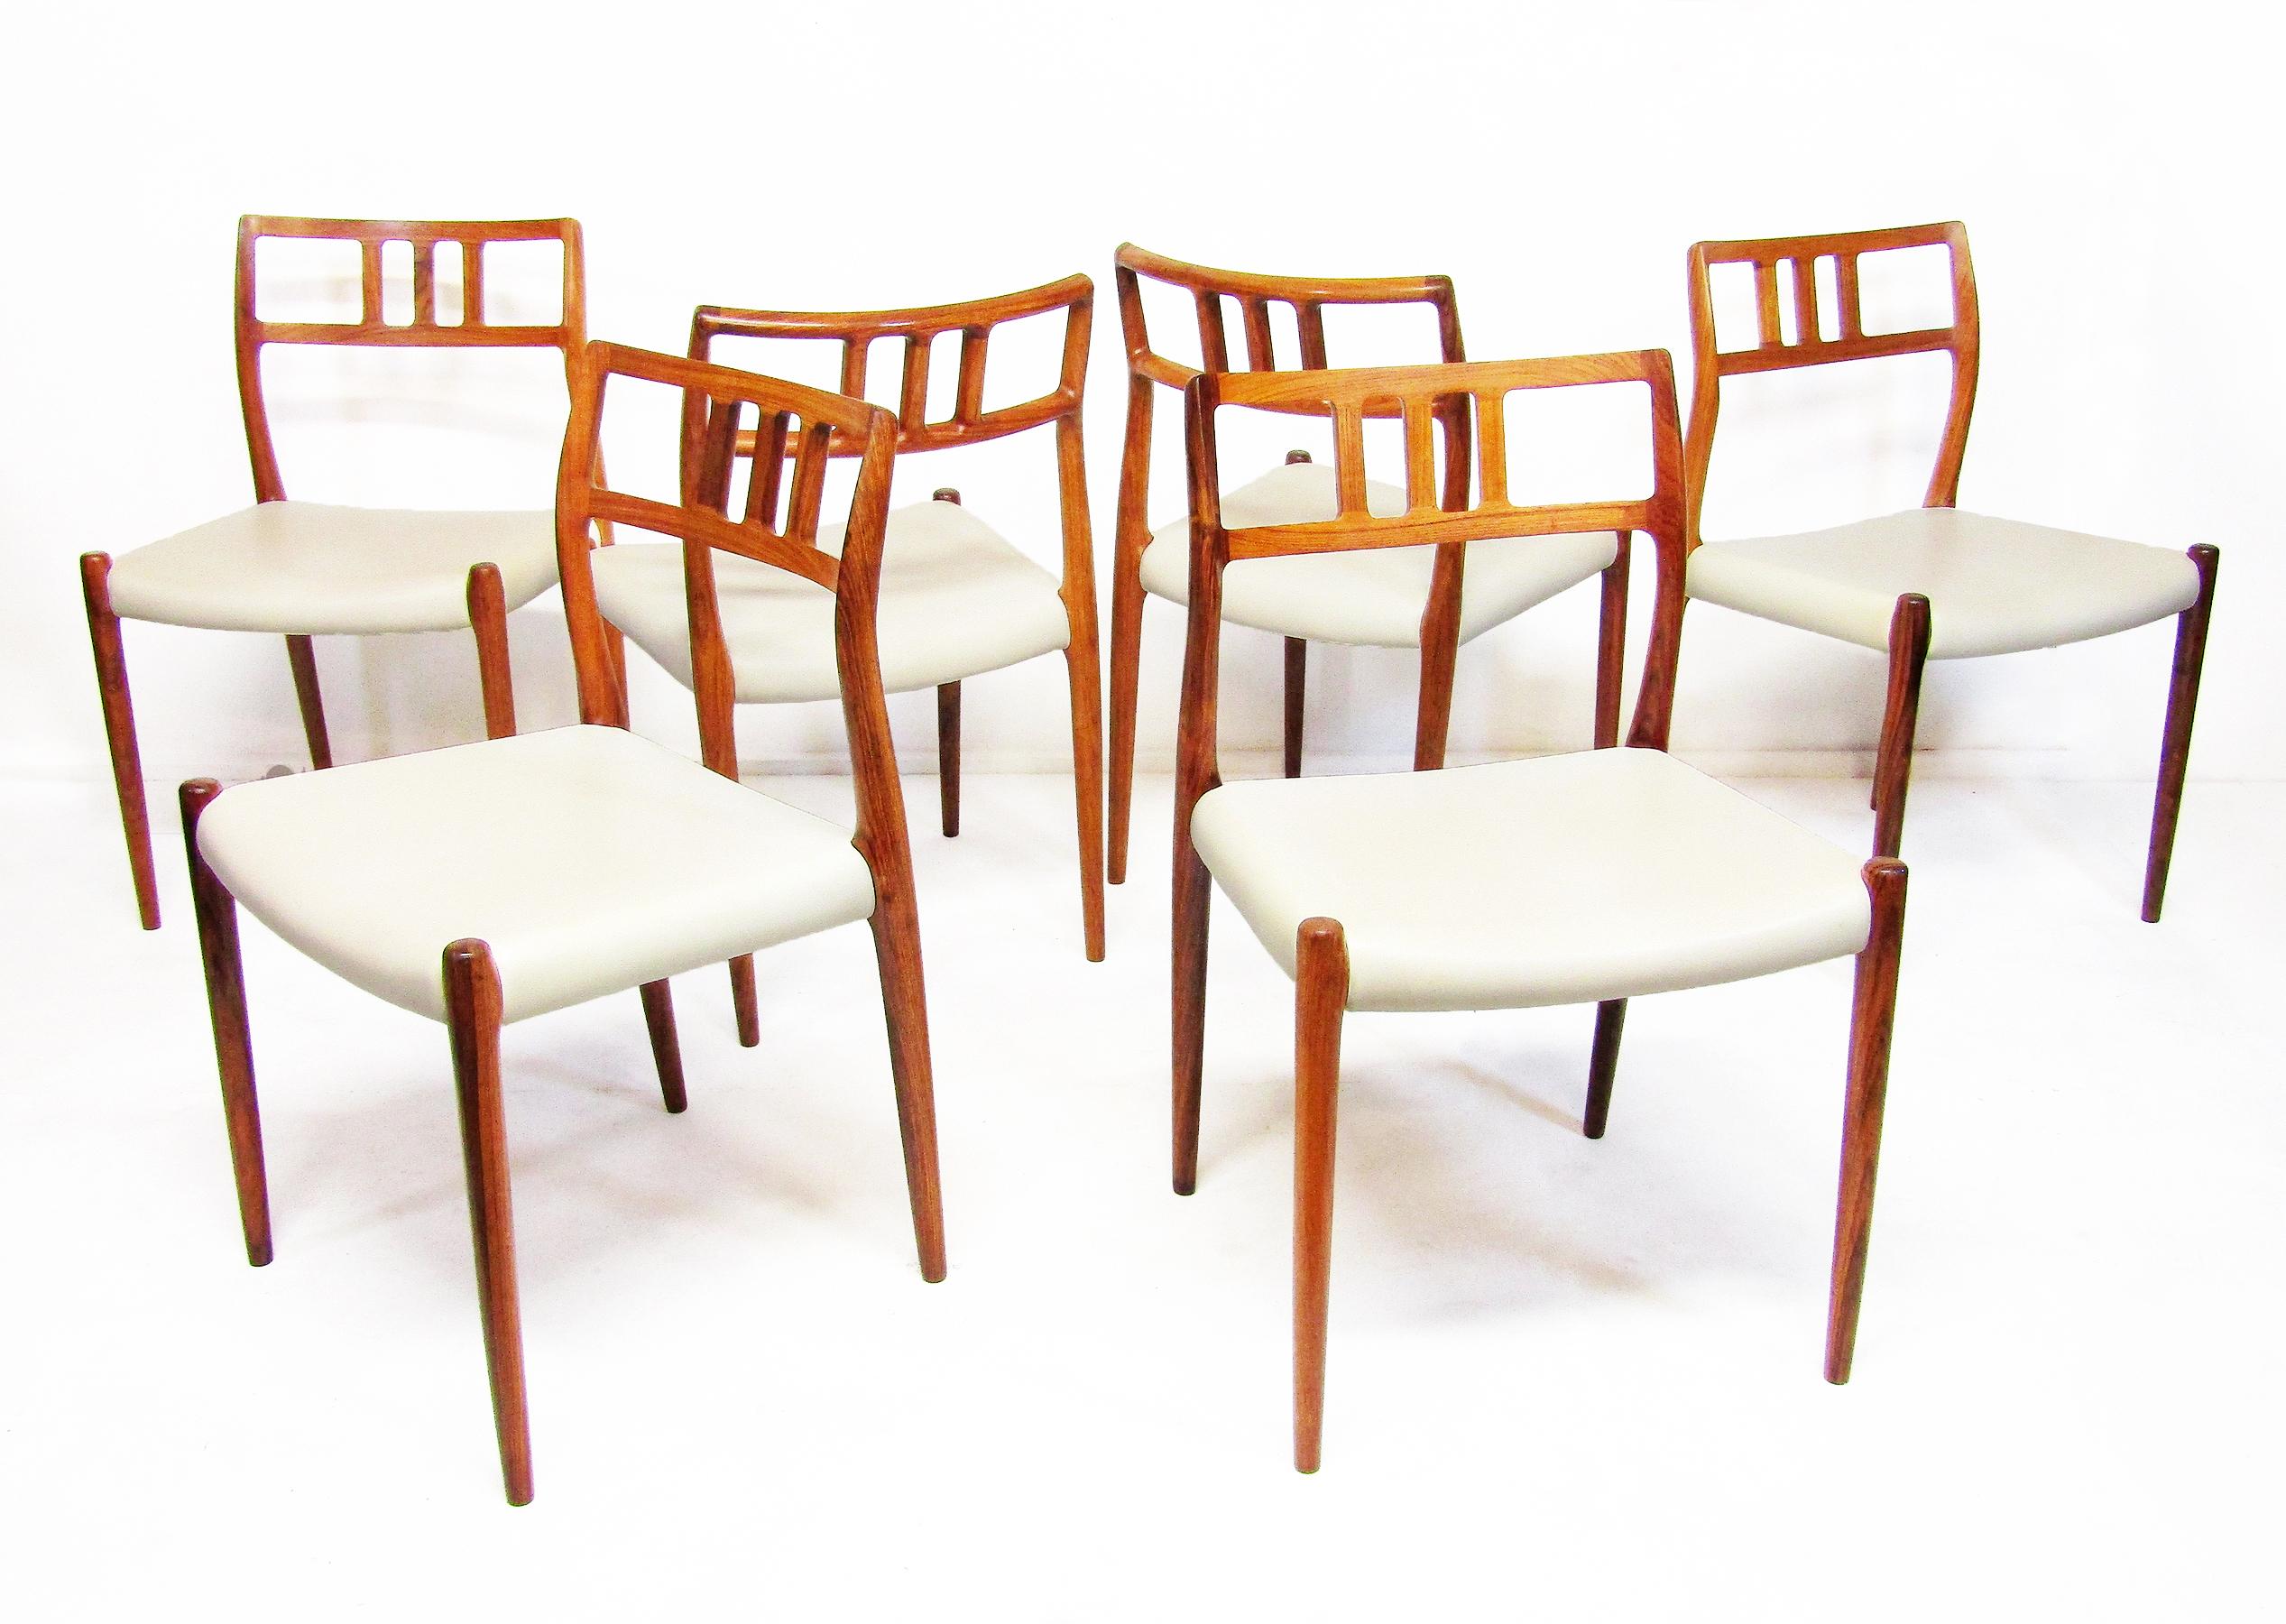 Sechs dänische Stühle „Modell 79“ aus Palisanderholz von Niels Moller, um 1960 (Moderne der Mitte des Jahrhunderts)